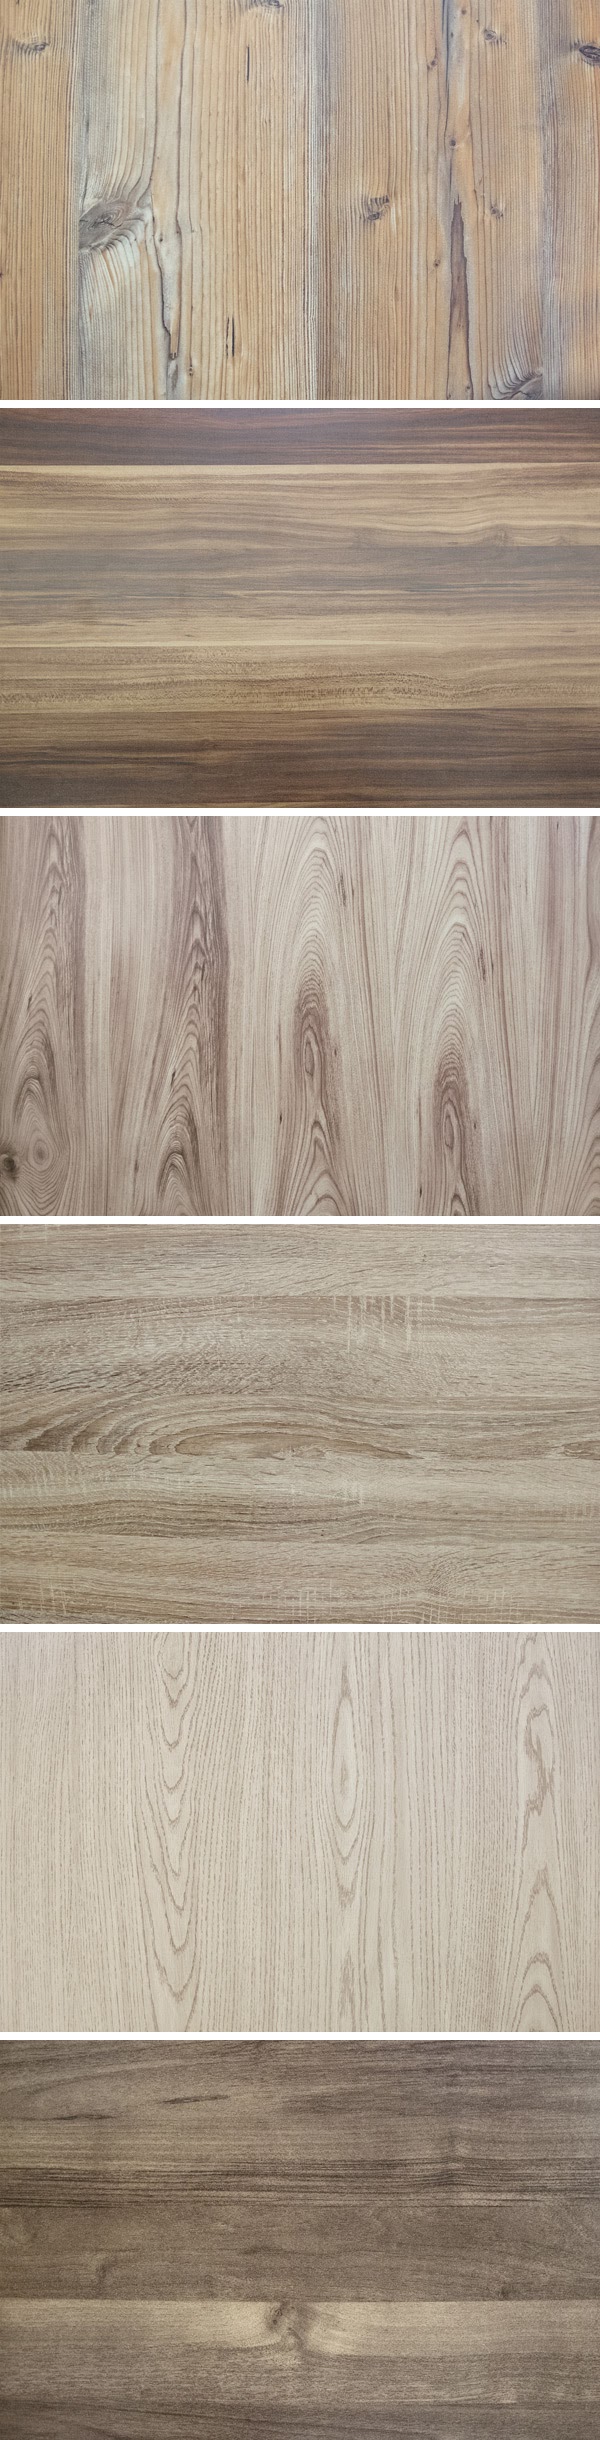 6 Fine Wood Textures (1)